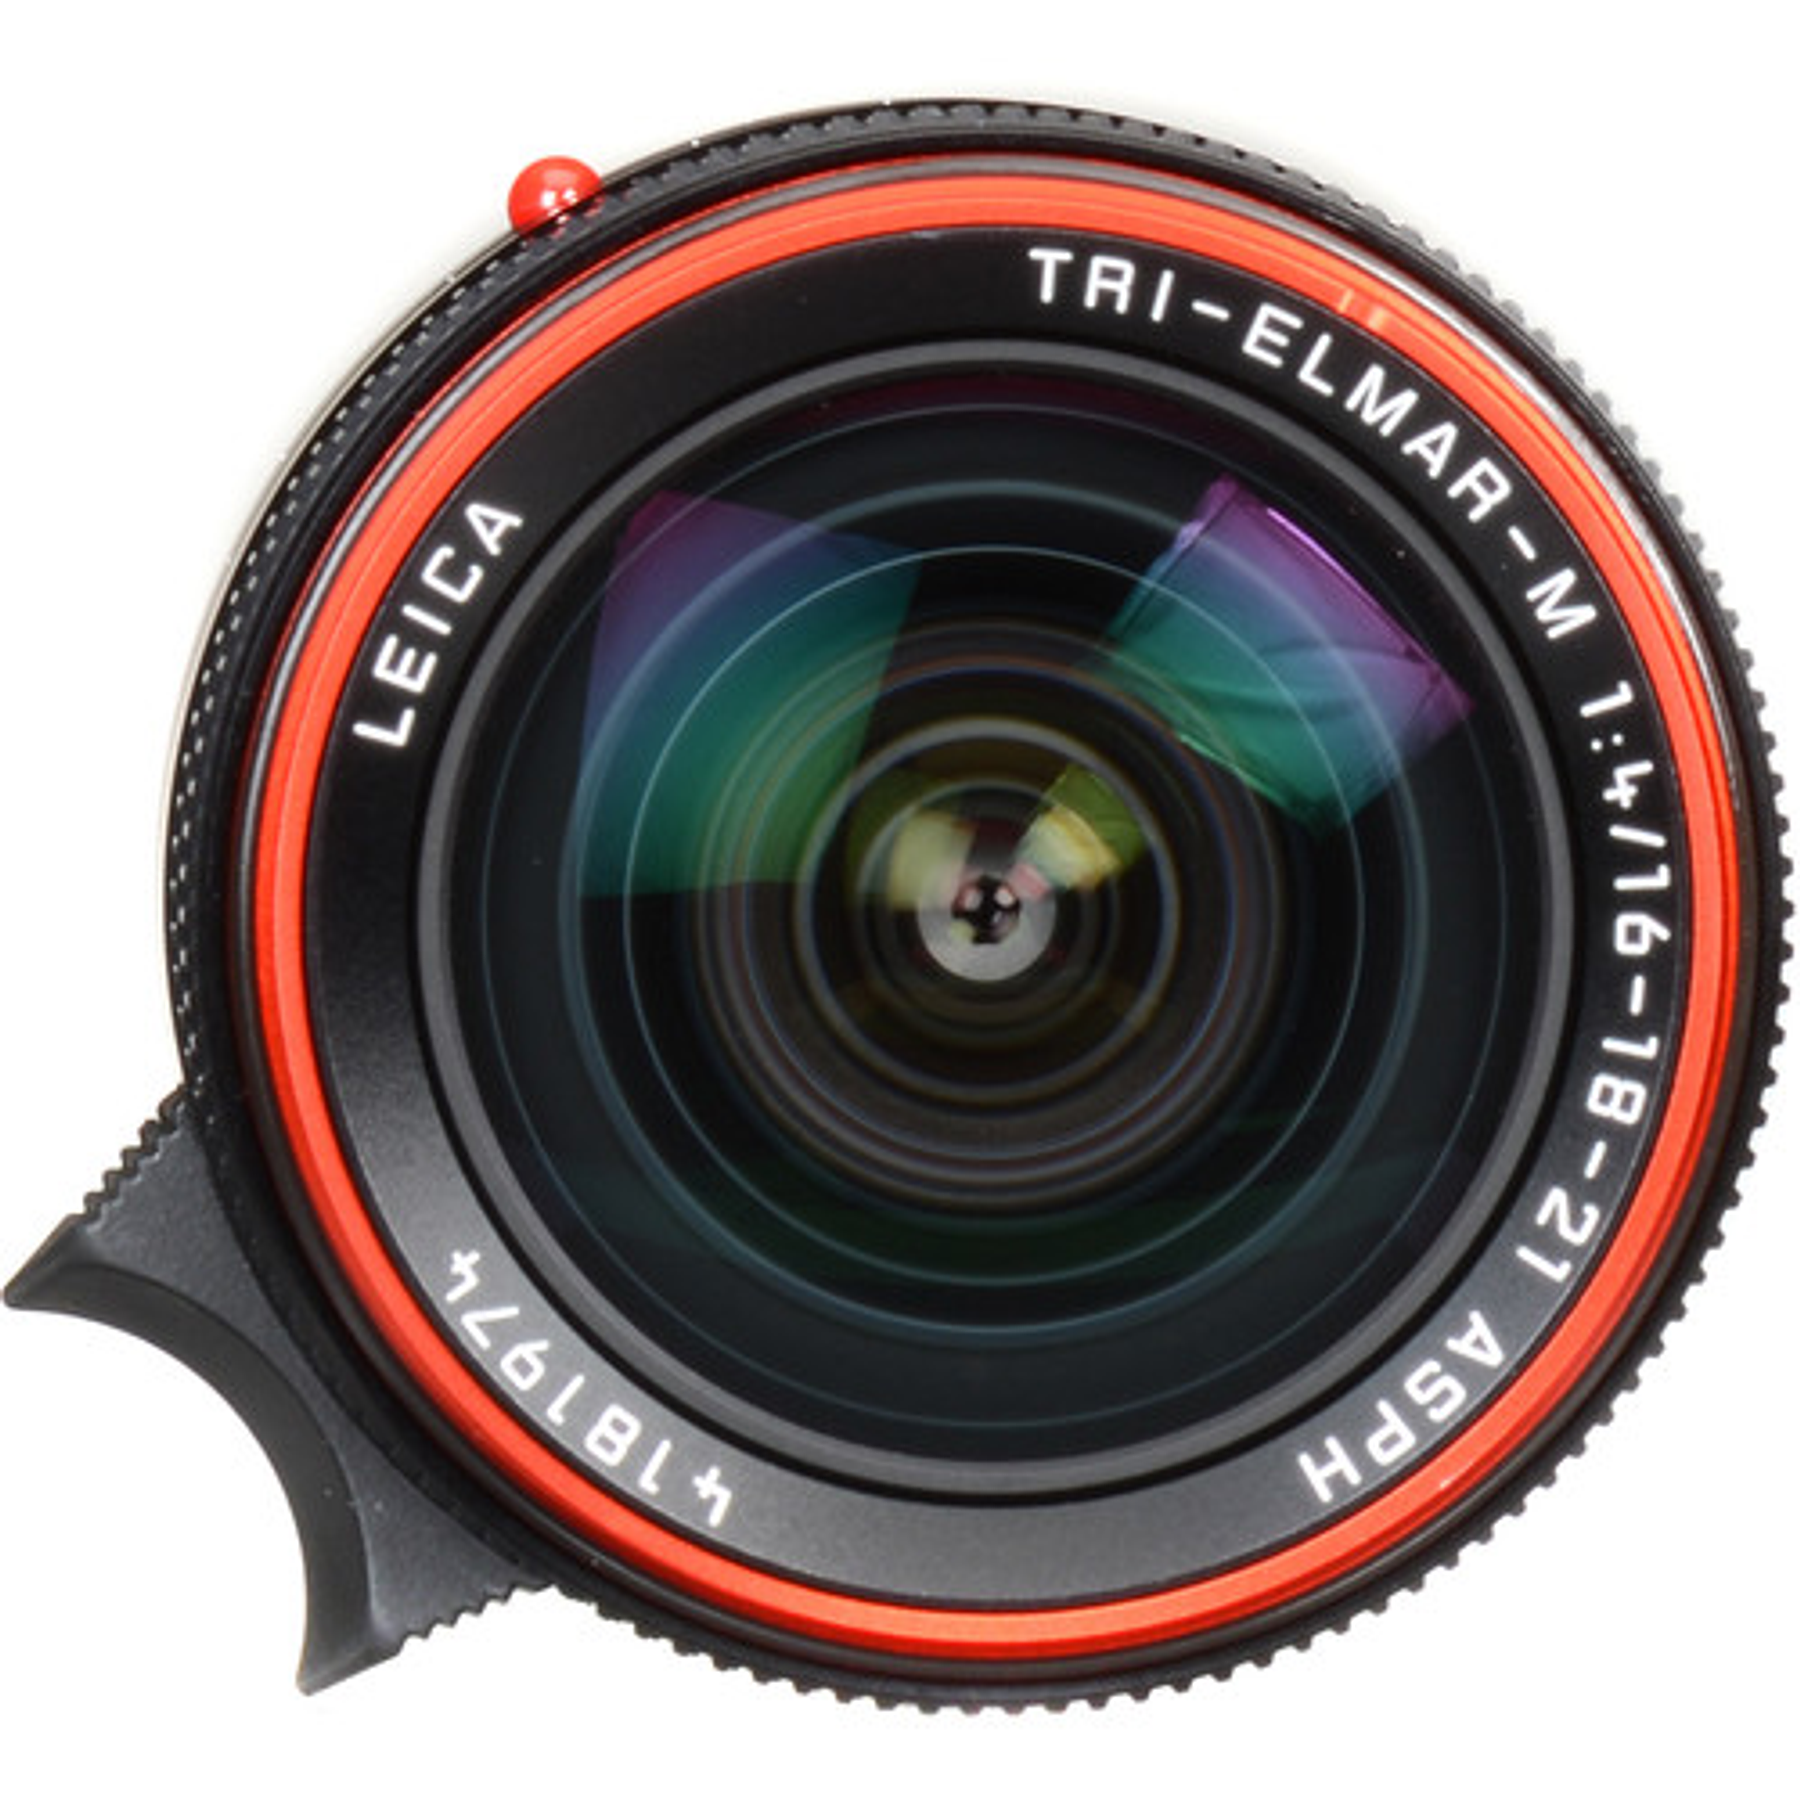 Leica Tri-Elmar-M 16-18-21mm f/4 ASPH.